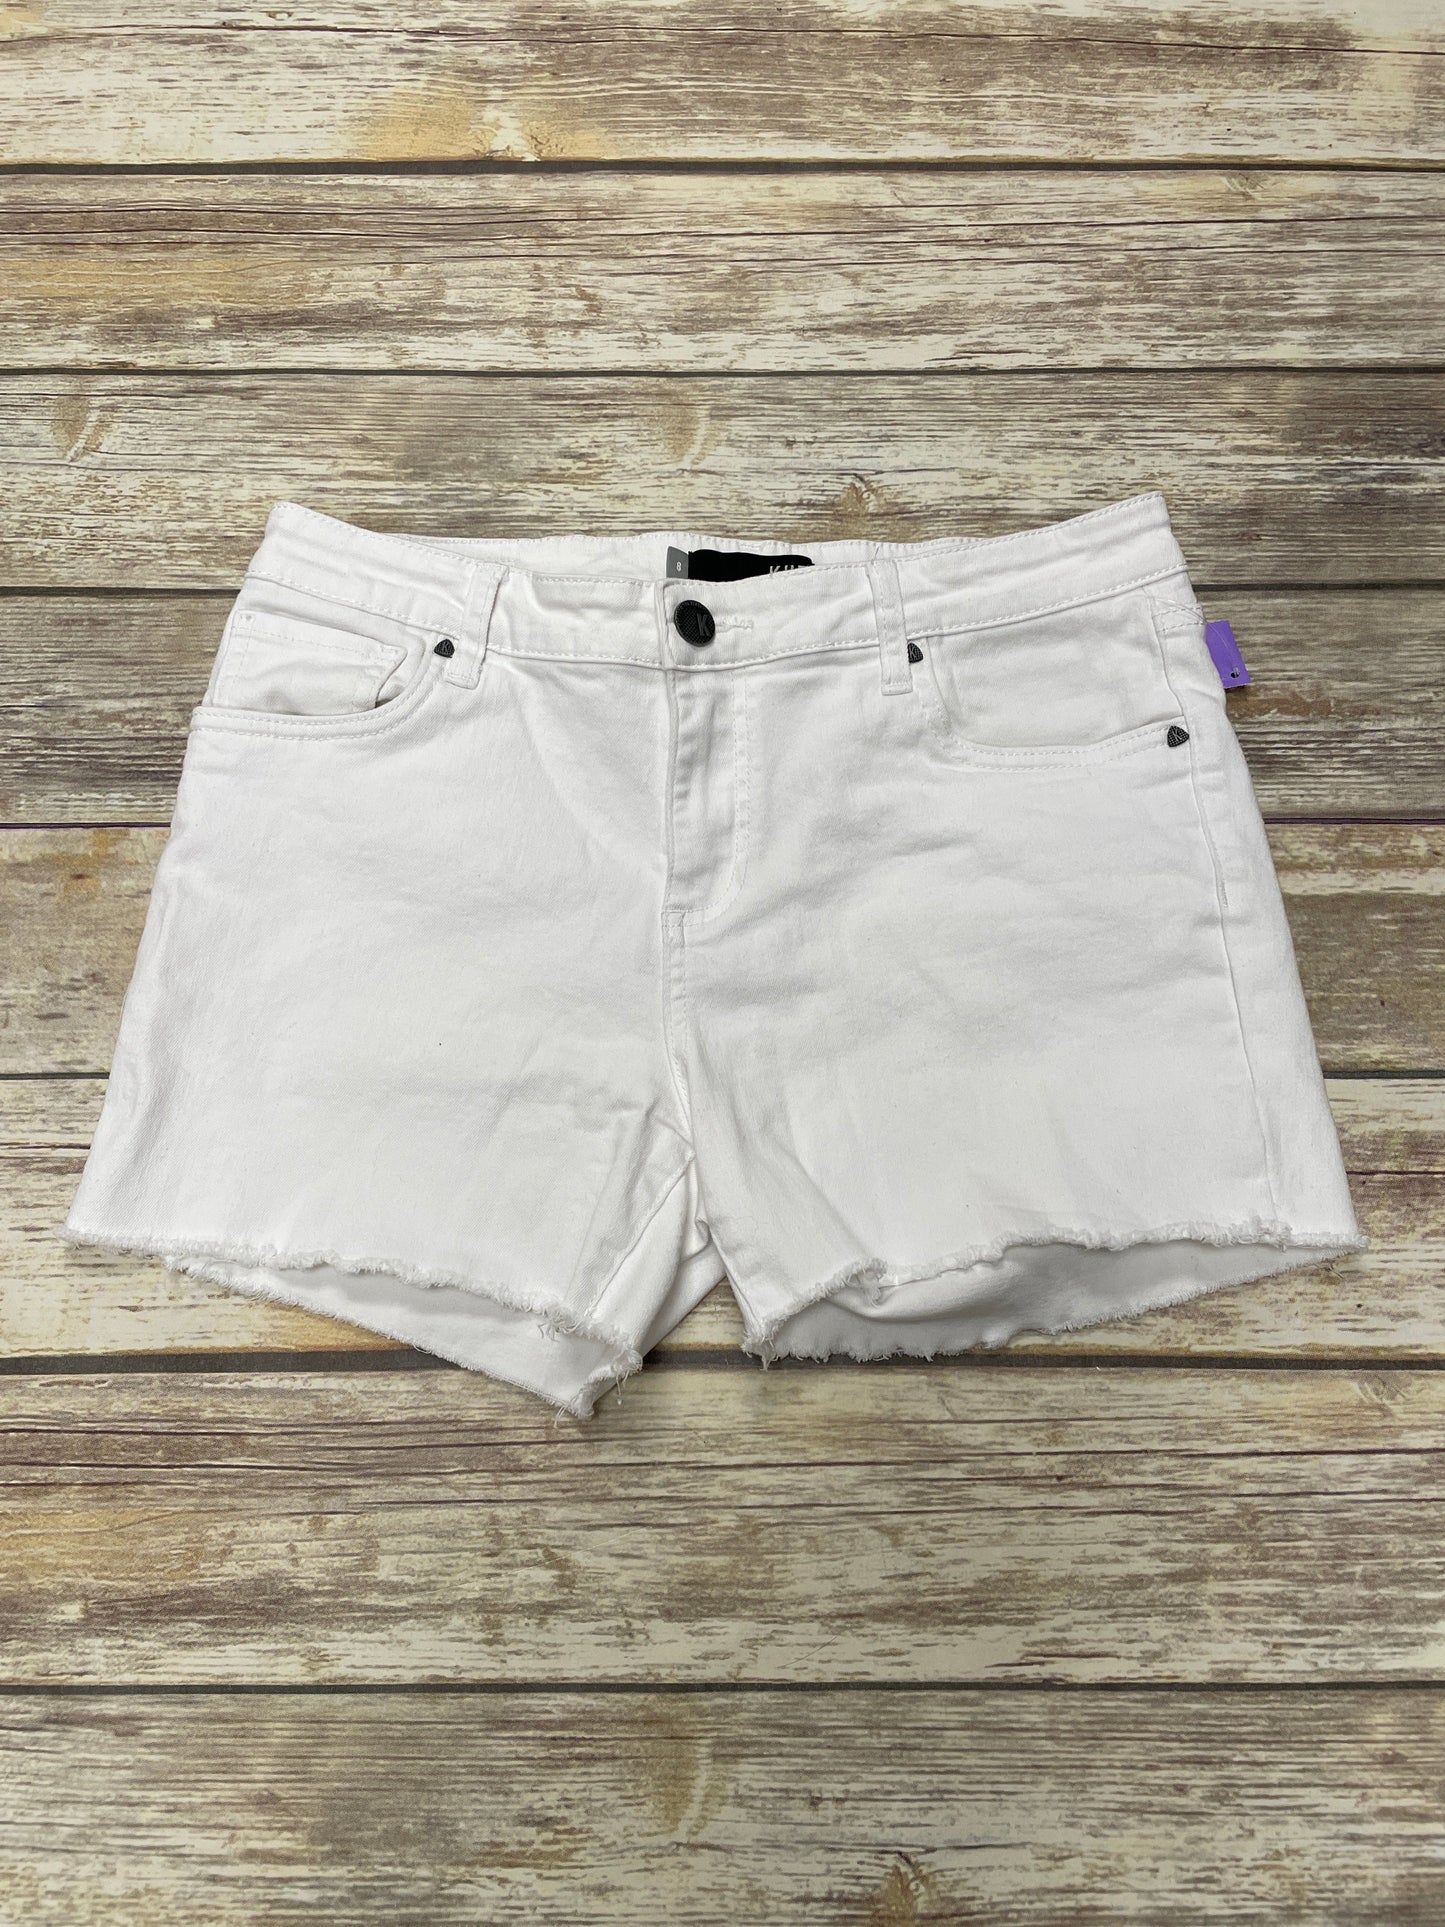 White Shorts Kut, Size 8